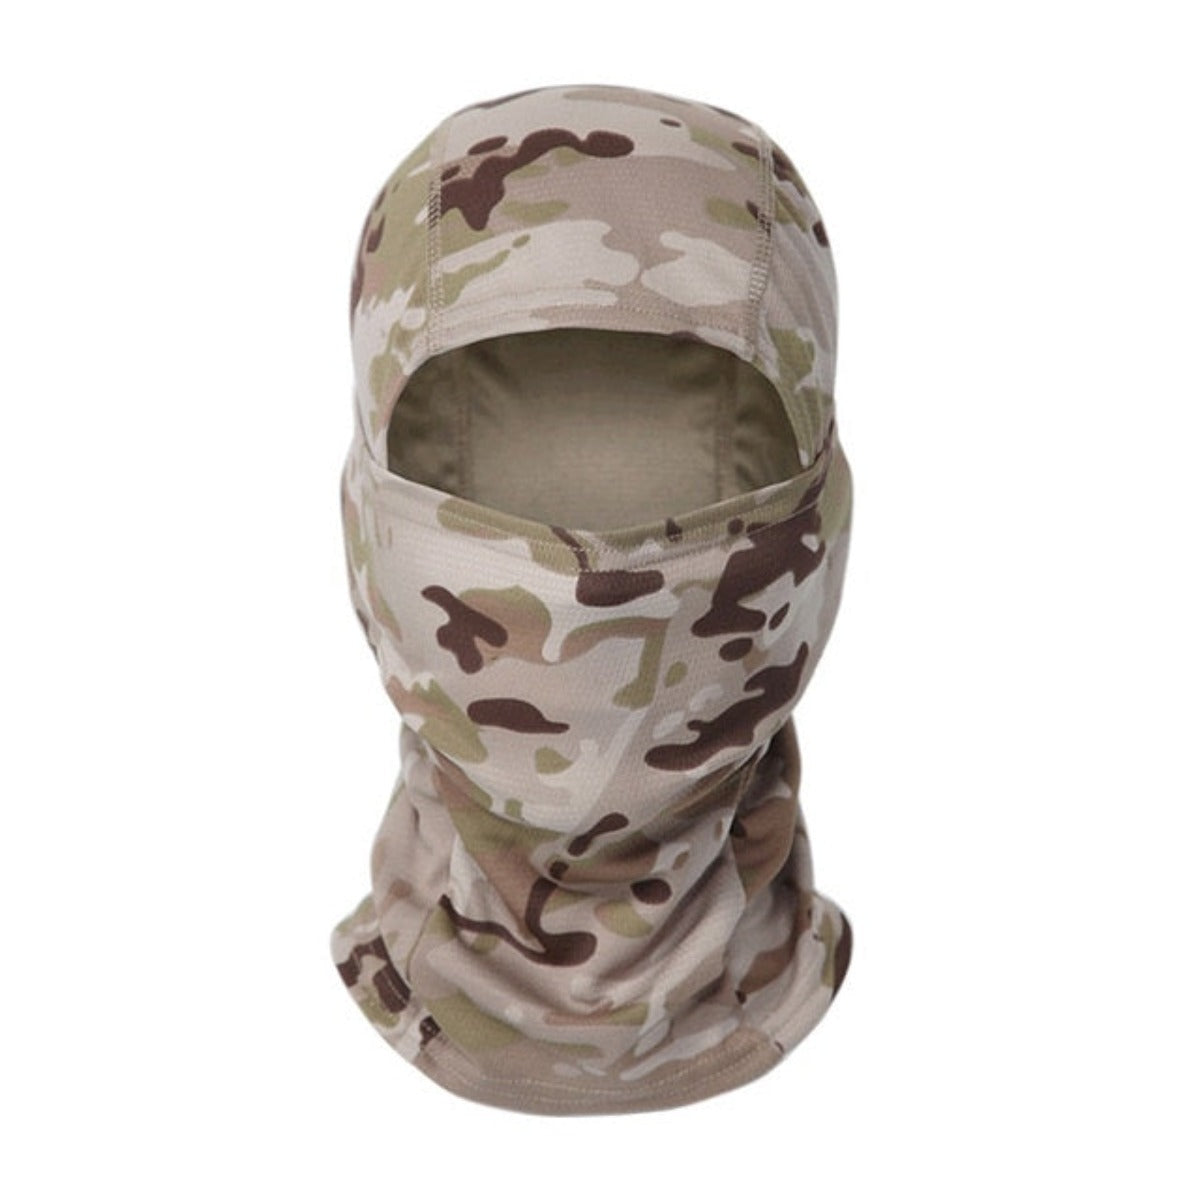 MultiCam Full Face Mask Cover - Scorpion Desert